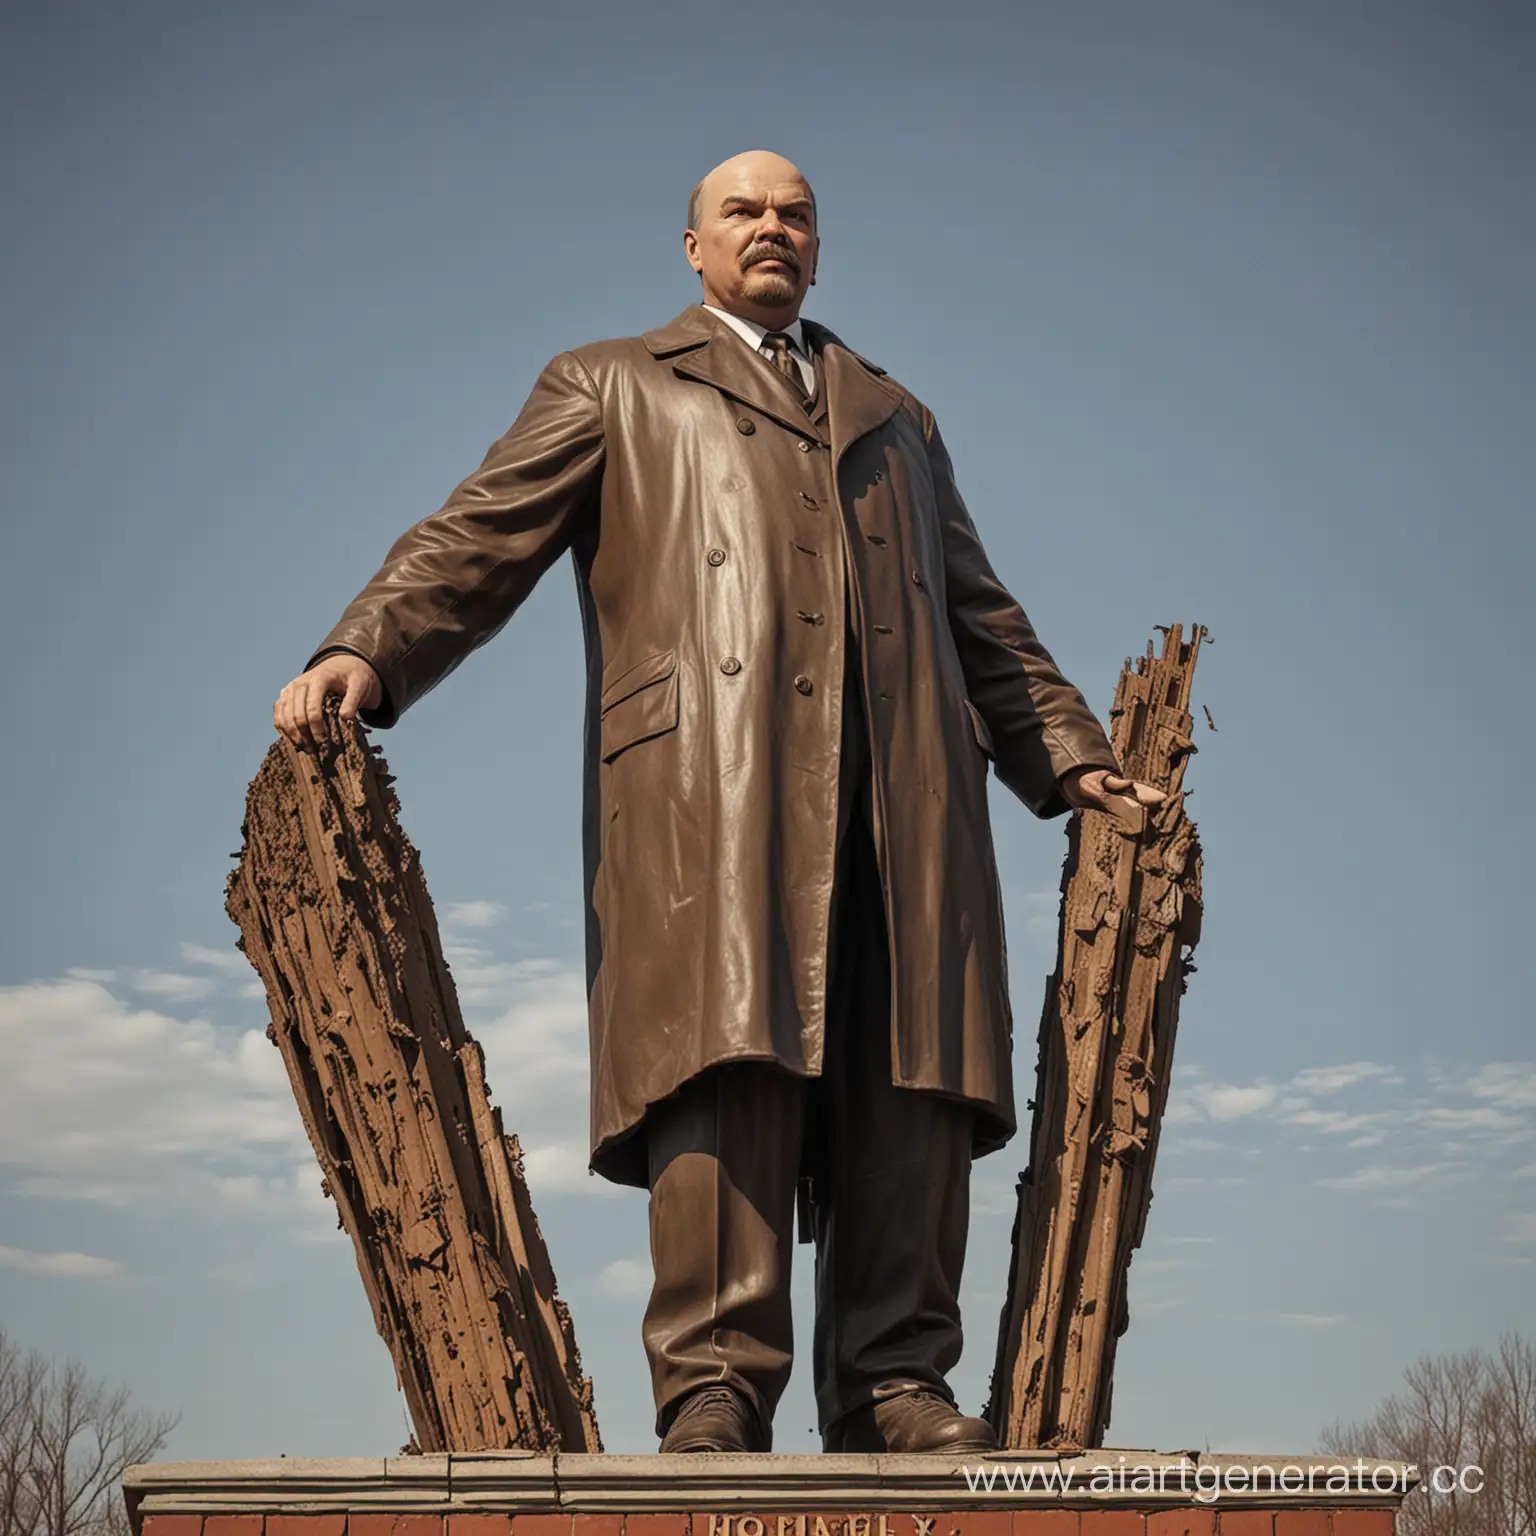 Lenin resurrected